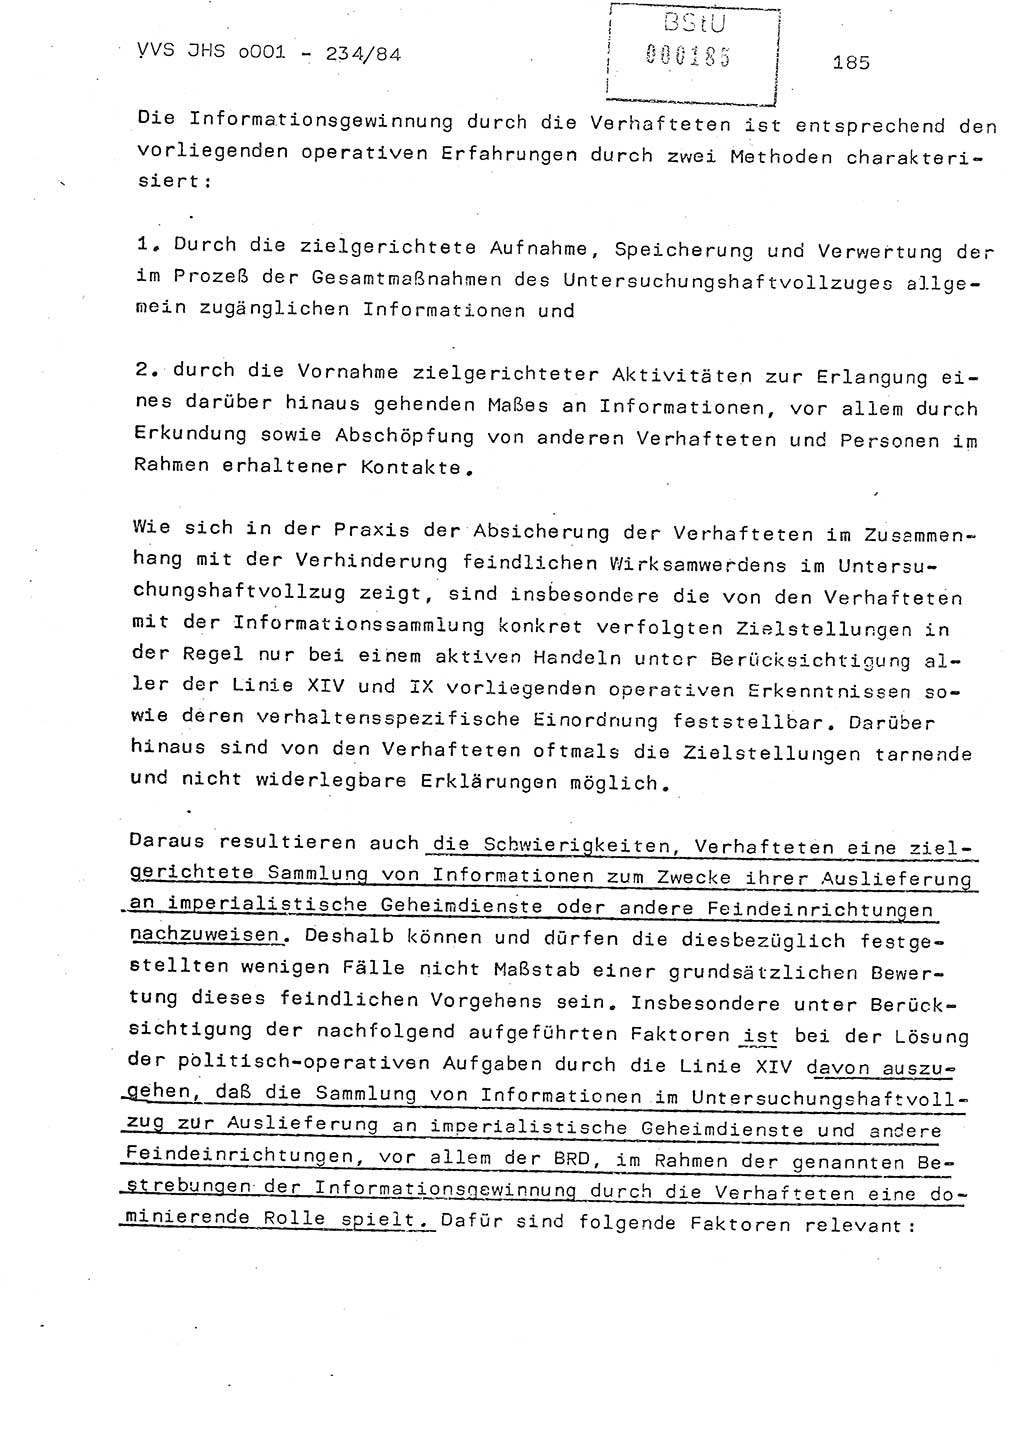 Dissertation Oberst Siegfried Rataizick (Abt. ⅩⅣ), Oberstleutnant Volkmar Heinz (Abt. ⅩⅣ), Oberstleutnant Werner Stein (HA Ⅸ), Hauptmann Heinz Conrad (JHS), Ministerium für Staatssicherheit (MfS) [Deutsche Demokratische Republik (DDR)], Juristische Hochschule (JHS), Vertrauliche Verschlußsache (VVS) o001-234/84, Potsdam 1984, Seite 185 (Diss. MfS DDR JHS VVS o001-234/84 1984, S. 185)